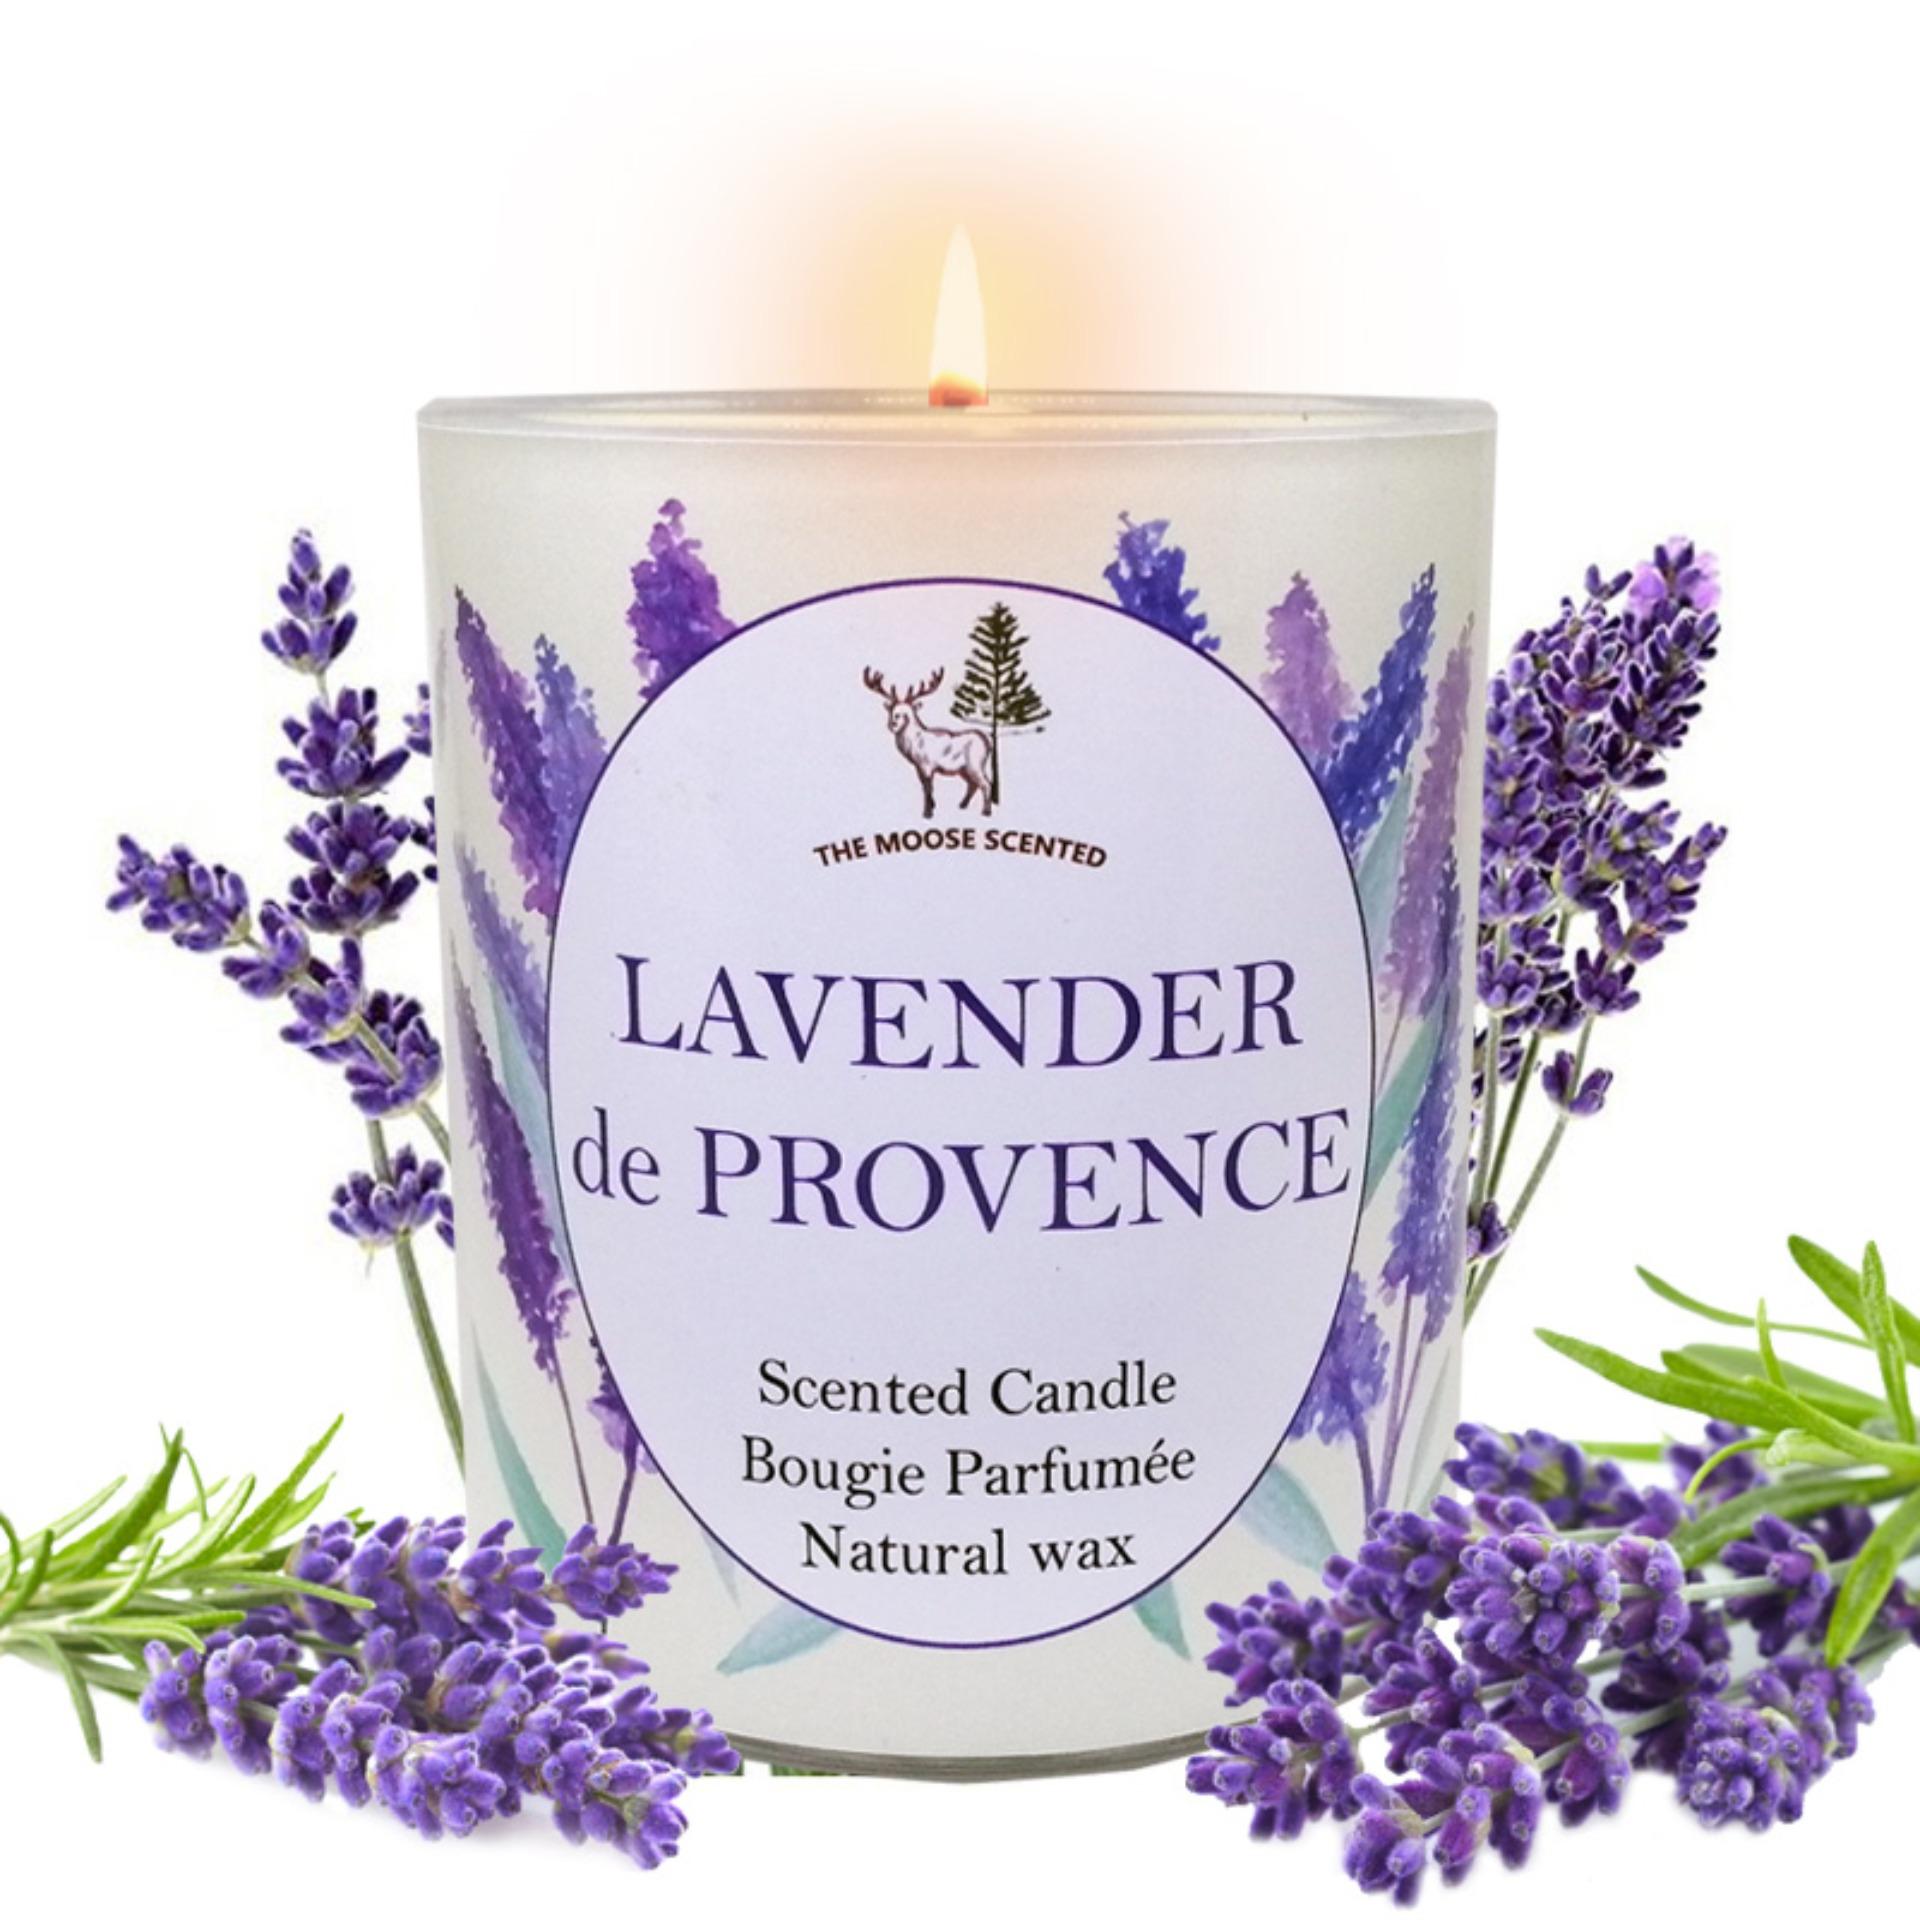 เทียนหอม Soy Wax กลิ่นทุ่งดอกลาเวนเดอร์ แห่งโพรวองซ์ LAVENDER de PROVENCE ประเทศฝรั่งเศส